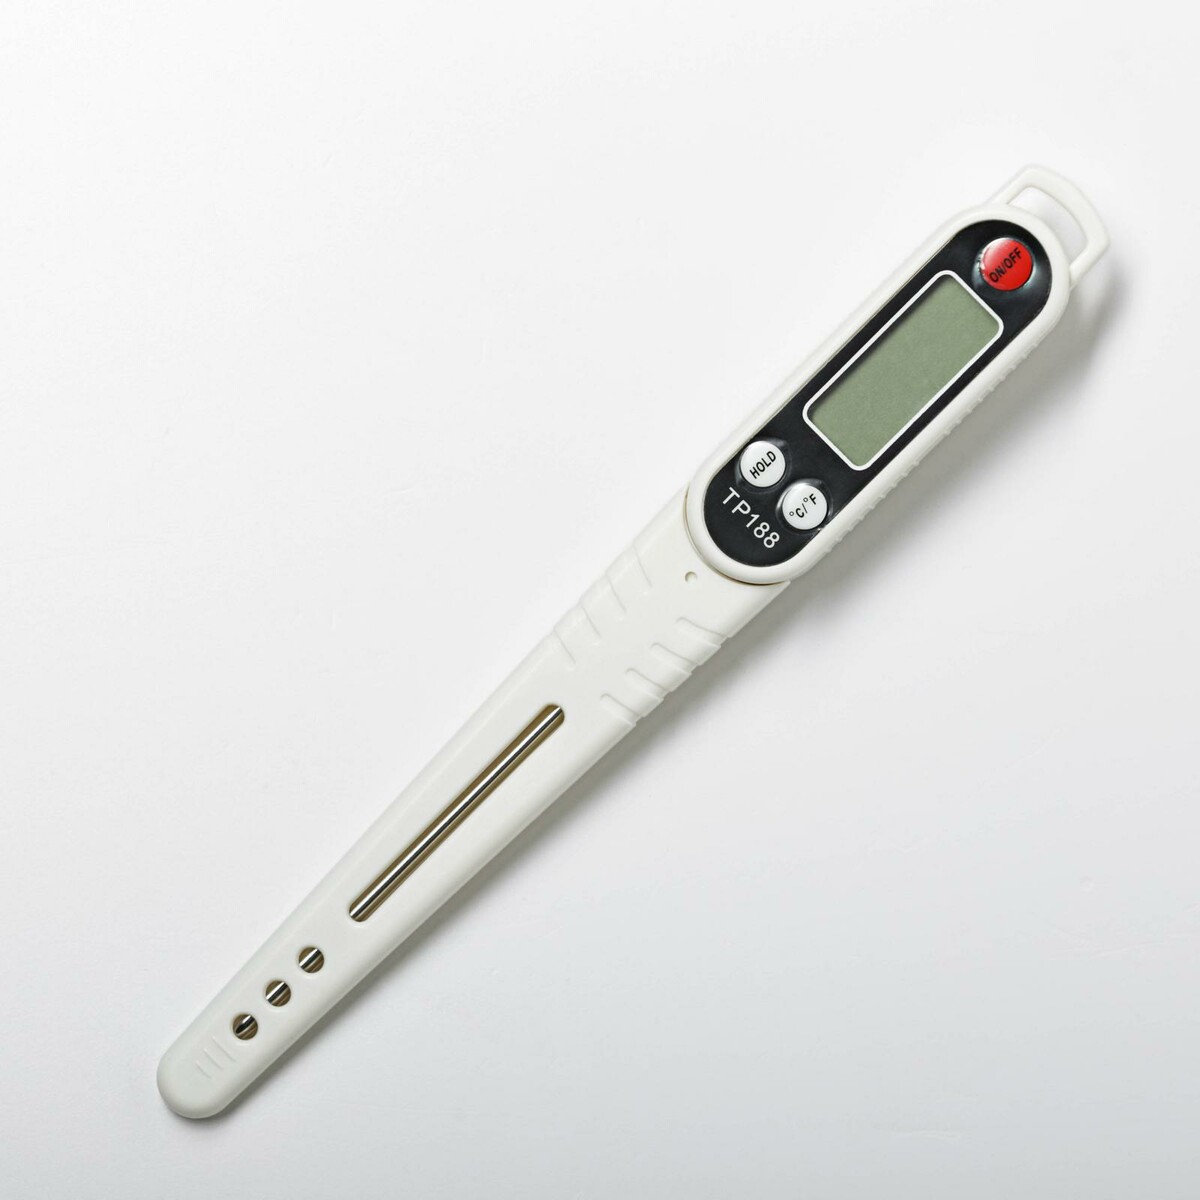 Термометр (термощуп) электронный на батарейках, в чехле rst электронный термометр с радиодатчиком q253